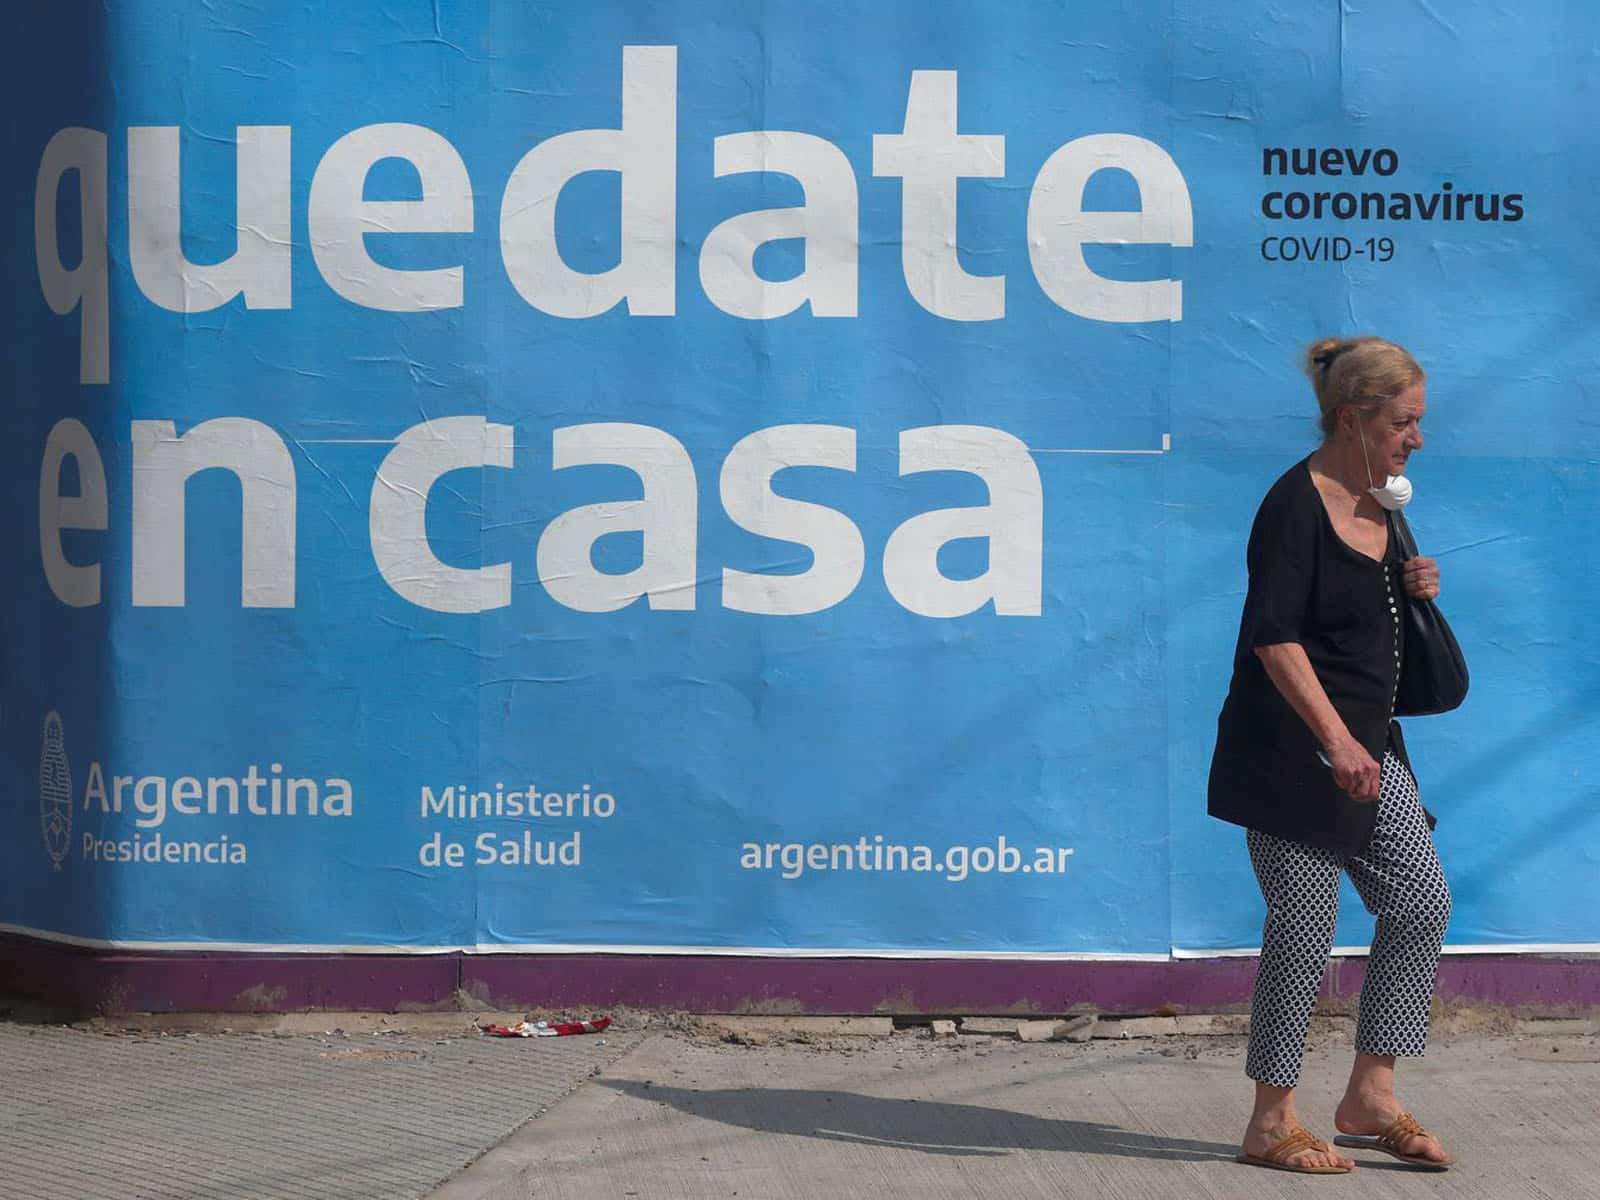 COVID-19: Médicos prevén semanas difíciles en Argentina y el riesgo de llegar al límite de la capacidad hospitalaria